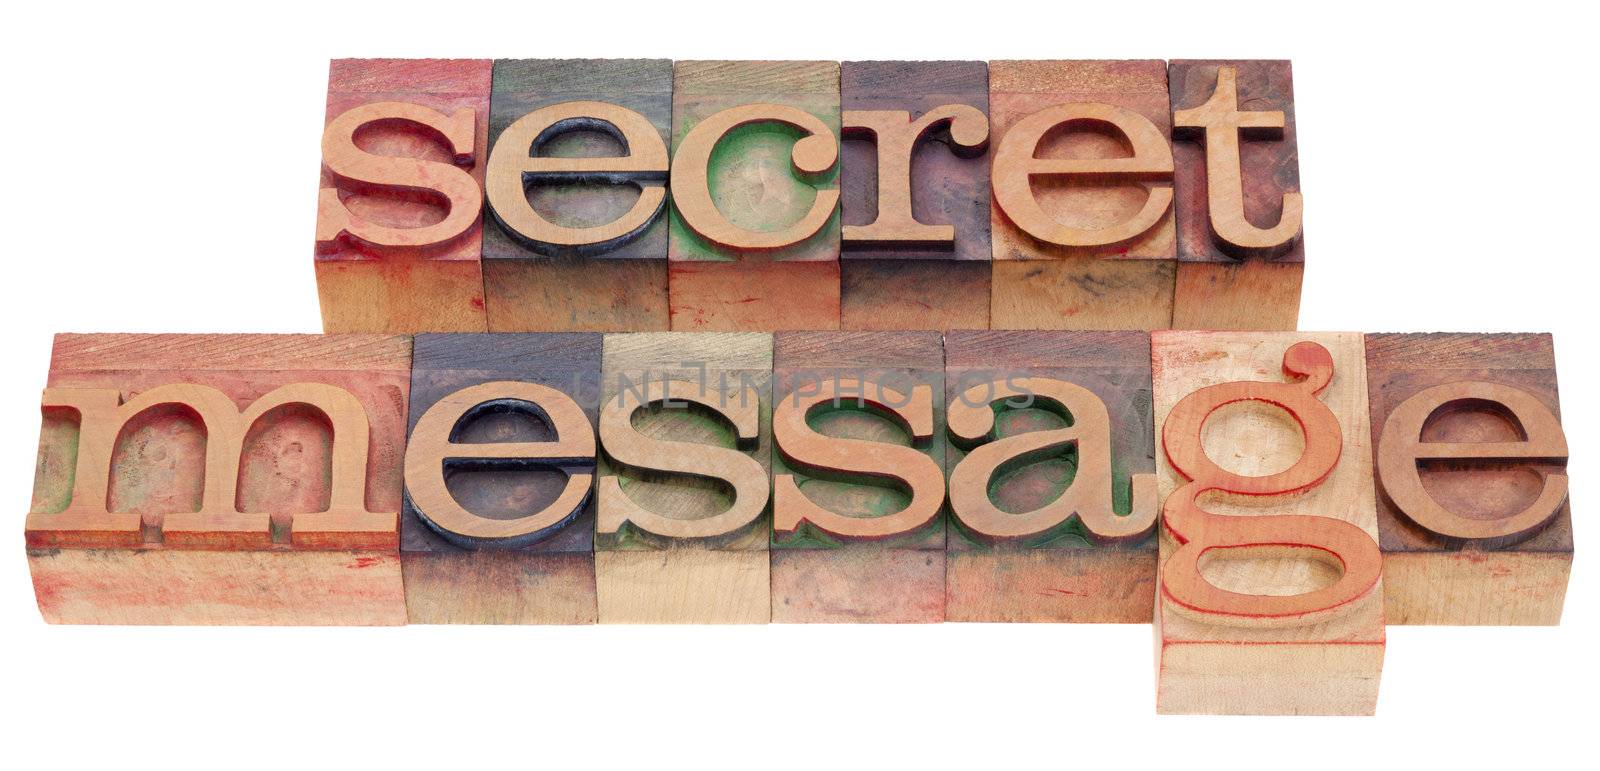 secret message in letterpress type by PixelsAway